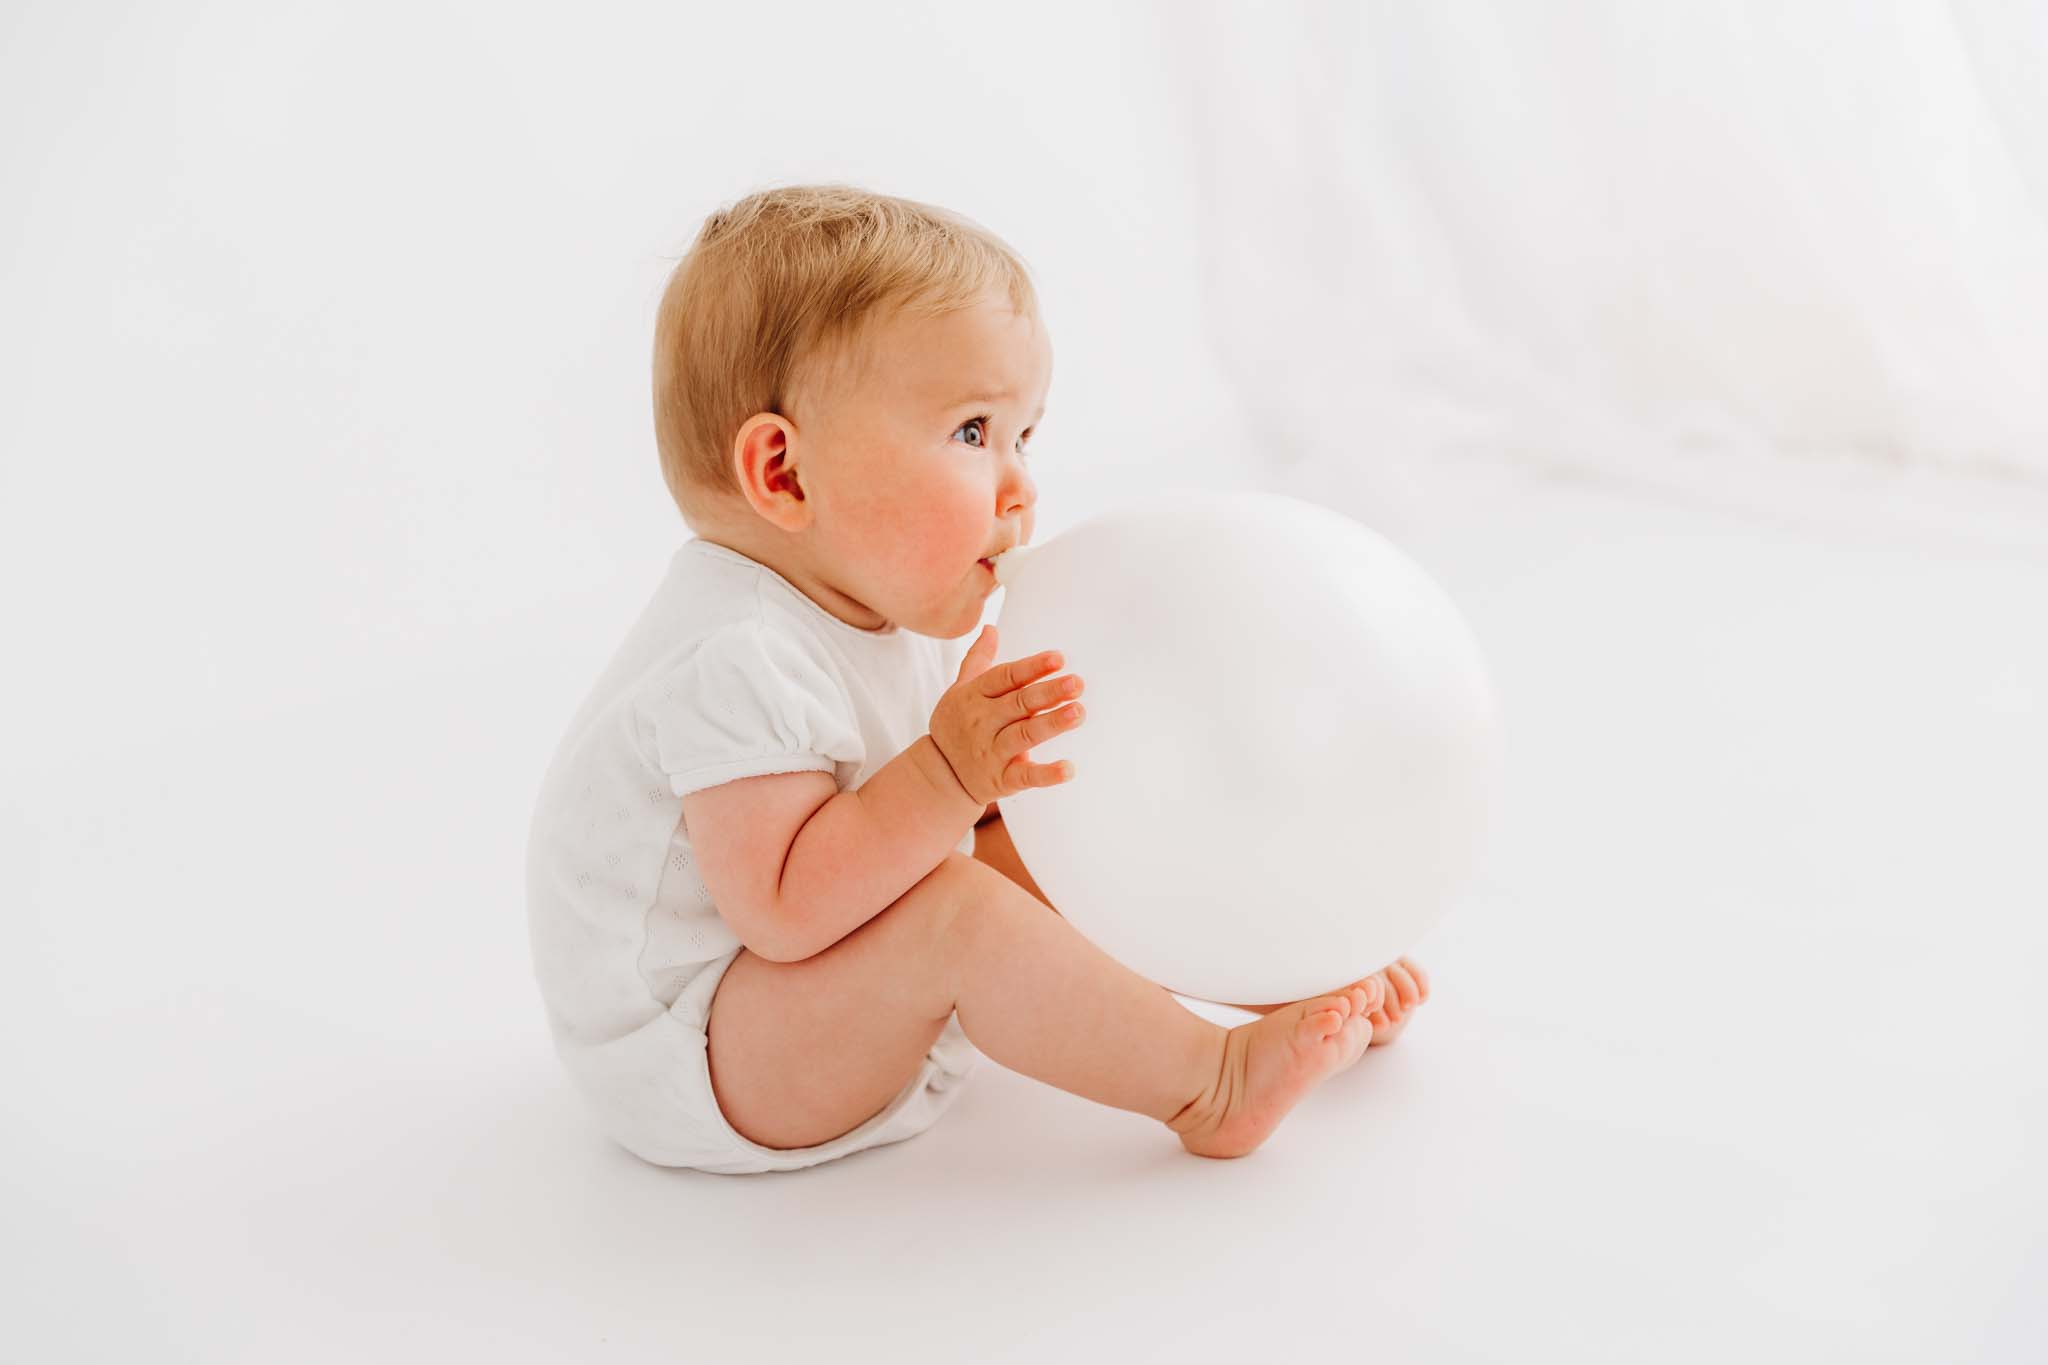 Baby blast Luftballon auf beim Babyshooting